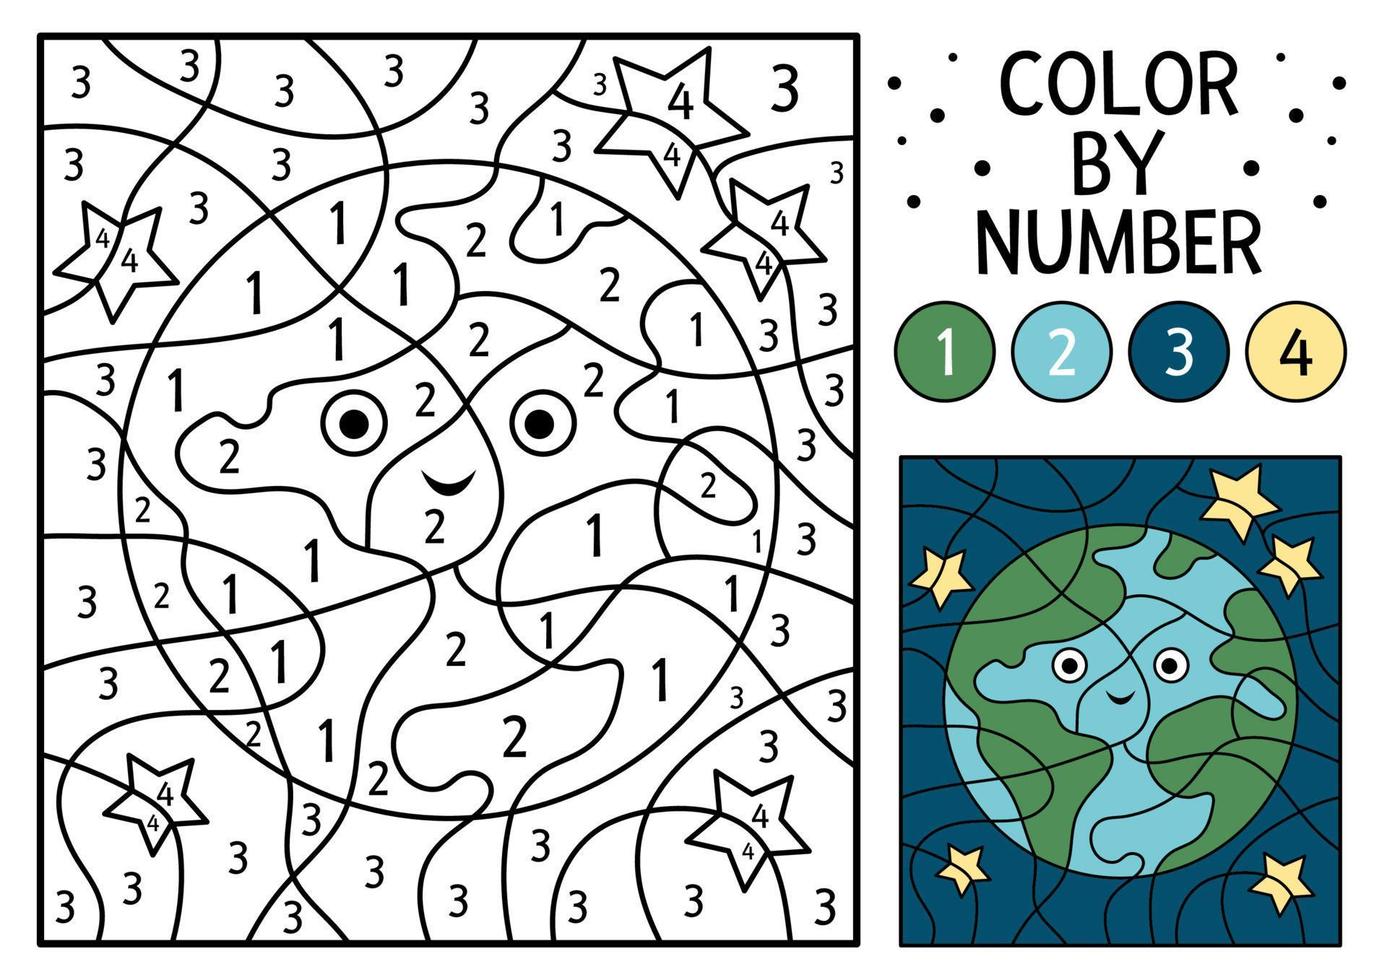 Colour by numbers (colorea por números): dibujo mágico de un huevo